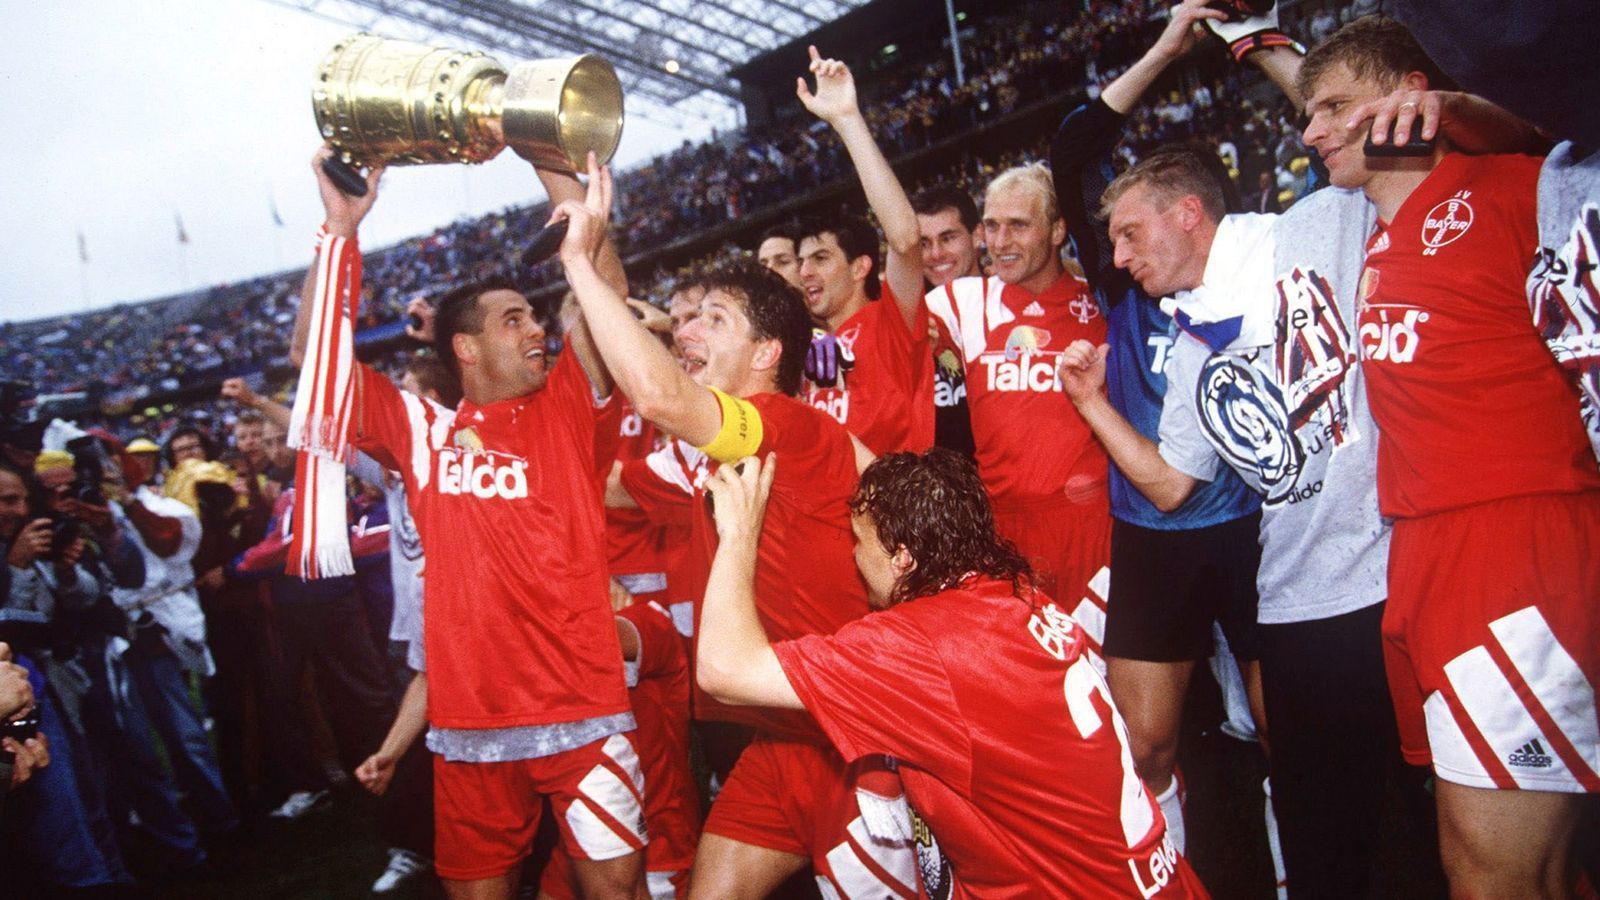 
                <strong>Einziger Sieg gegen Hertha Amateure</strong><br>
                Der letzte Sieg der Leverkusener im DFB-Pokal liegt allerdings schon etwas länger zurück. Zum Ende der Saison 1992/93 schlug die Mannschaft um Ulf Kirsten (mit Pokal in den Händen) die Amateure von Hertha BSC und konnte so das erste und bisher letzte Mal den DFB-Pokal in den Händen halten. Halbfinalgegner Saarbrücken scheiterte damals als Zweitligist übrigens in der 2. Hauptrunde an der Mannschaft des 1. FC Carl-Zeiss Jena. 
              